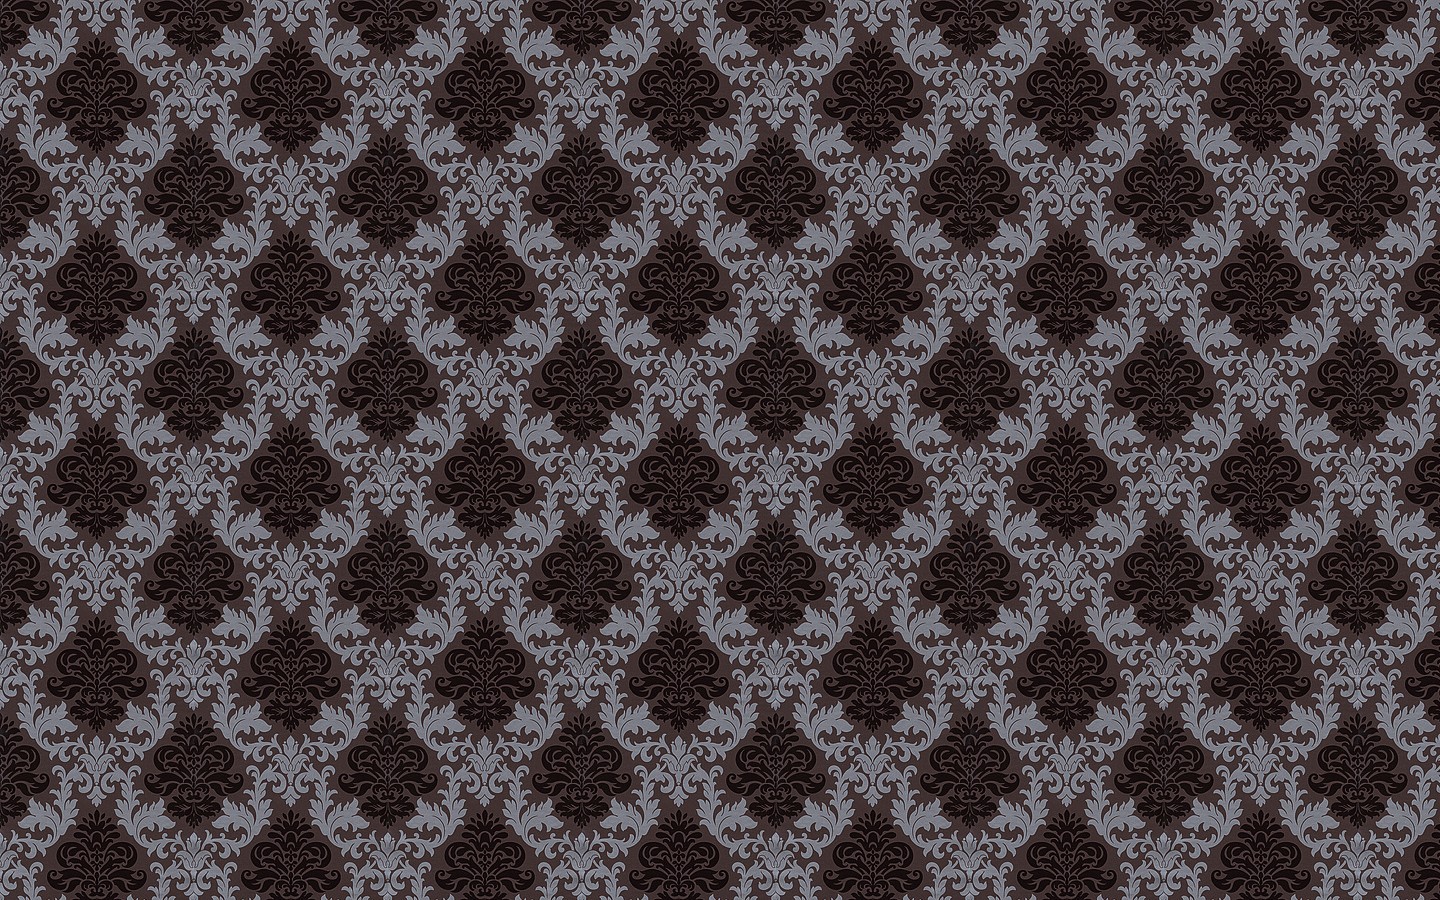 General 1440x900 pattern texture digital art